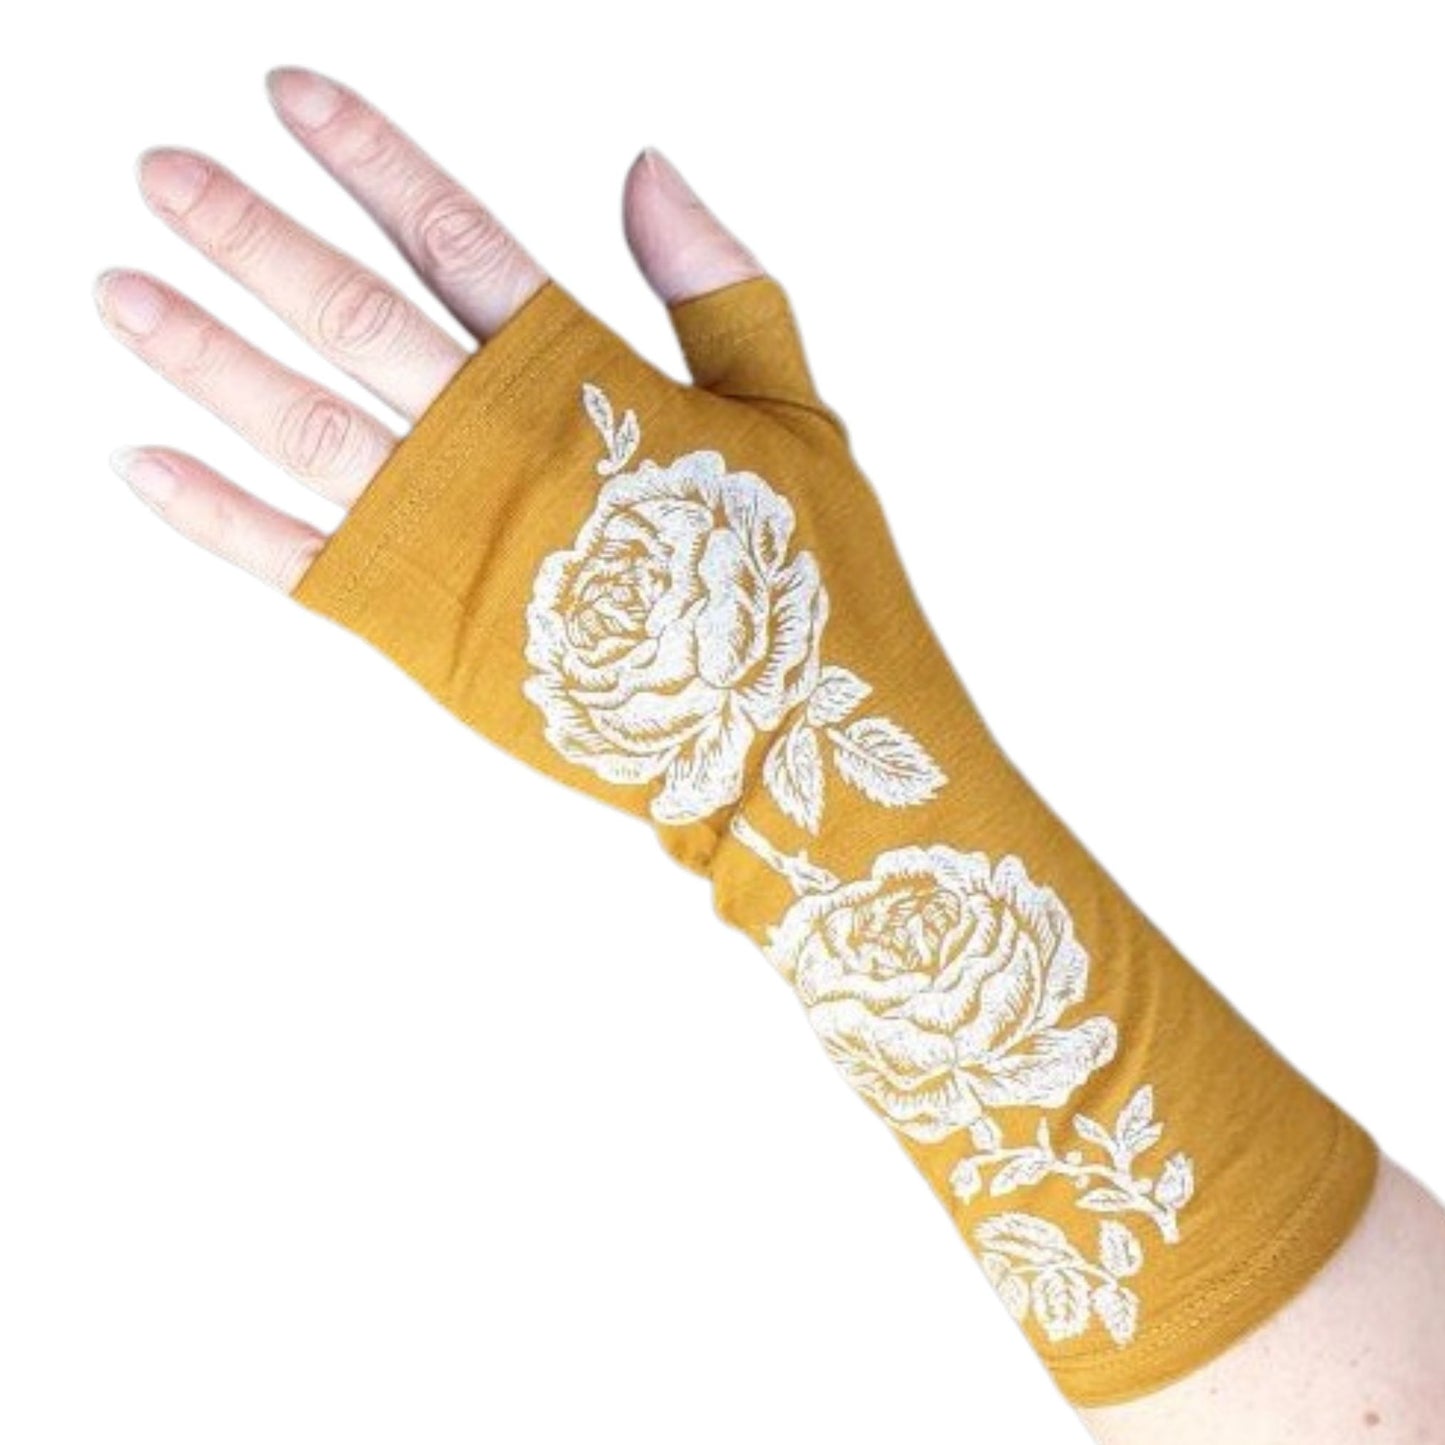 Mustard Merino fingerless gloves with rose design